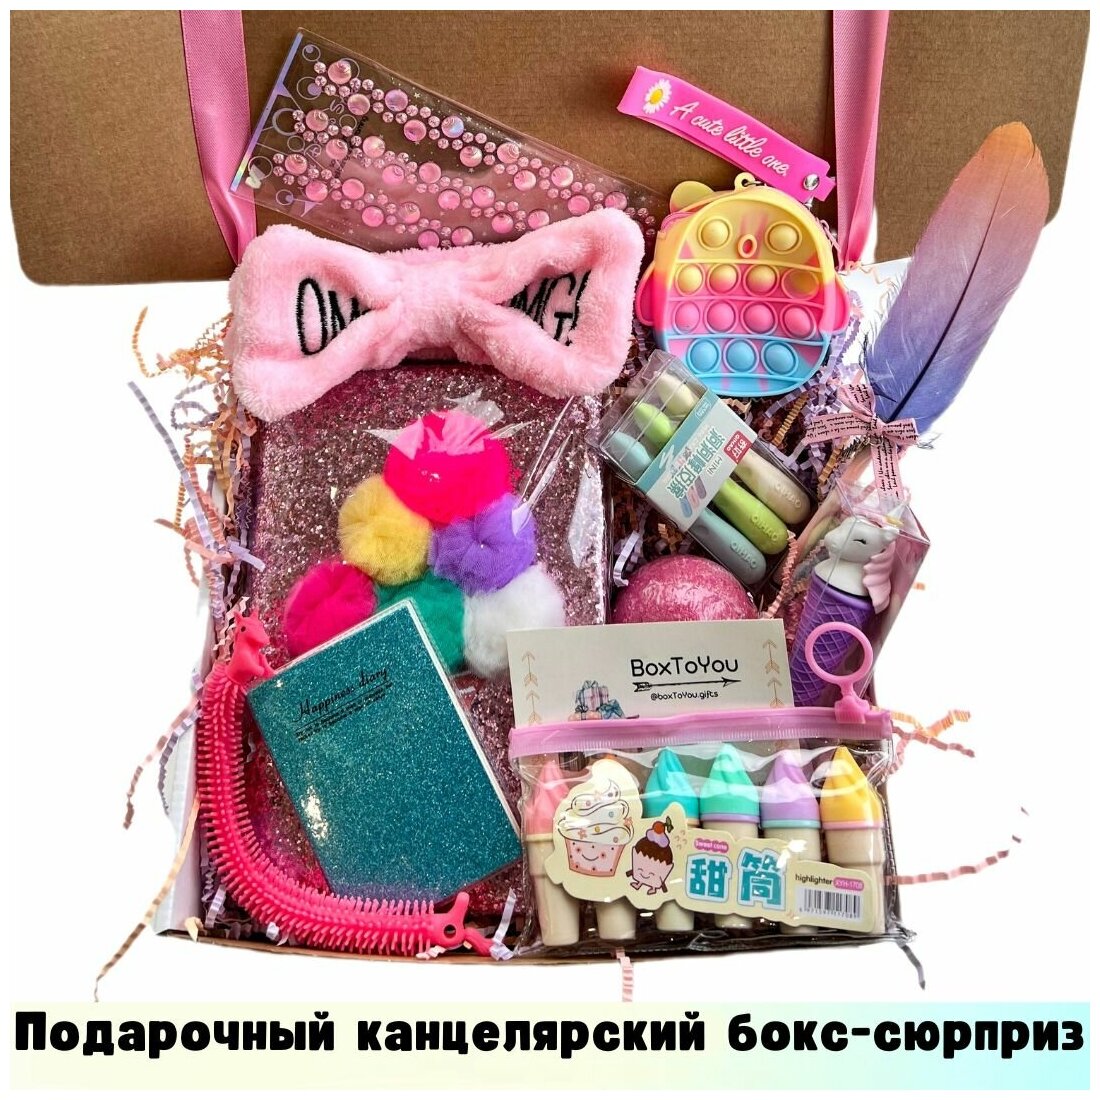 Подарочный набор для девочки первоклассника BoxToYou / Канцелярия для школы / Детский сюрприз бокс с игрушками / 18 товаров